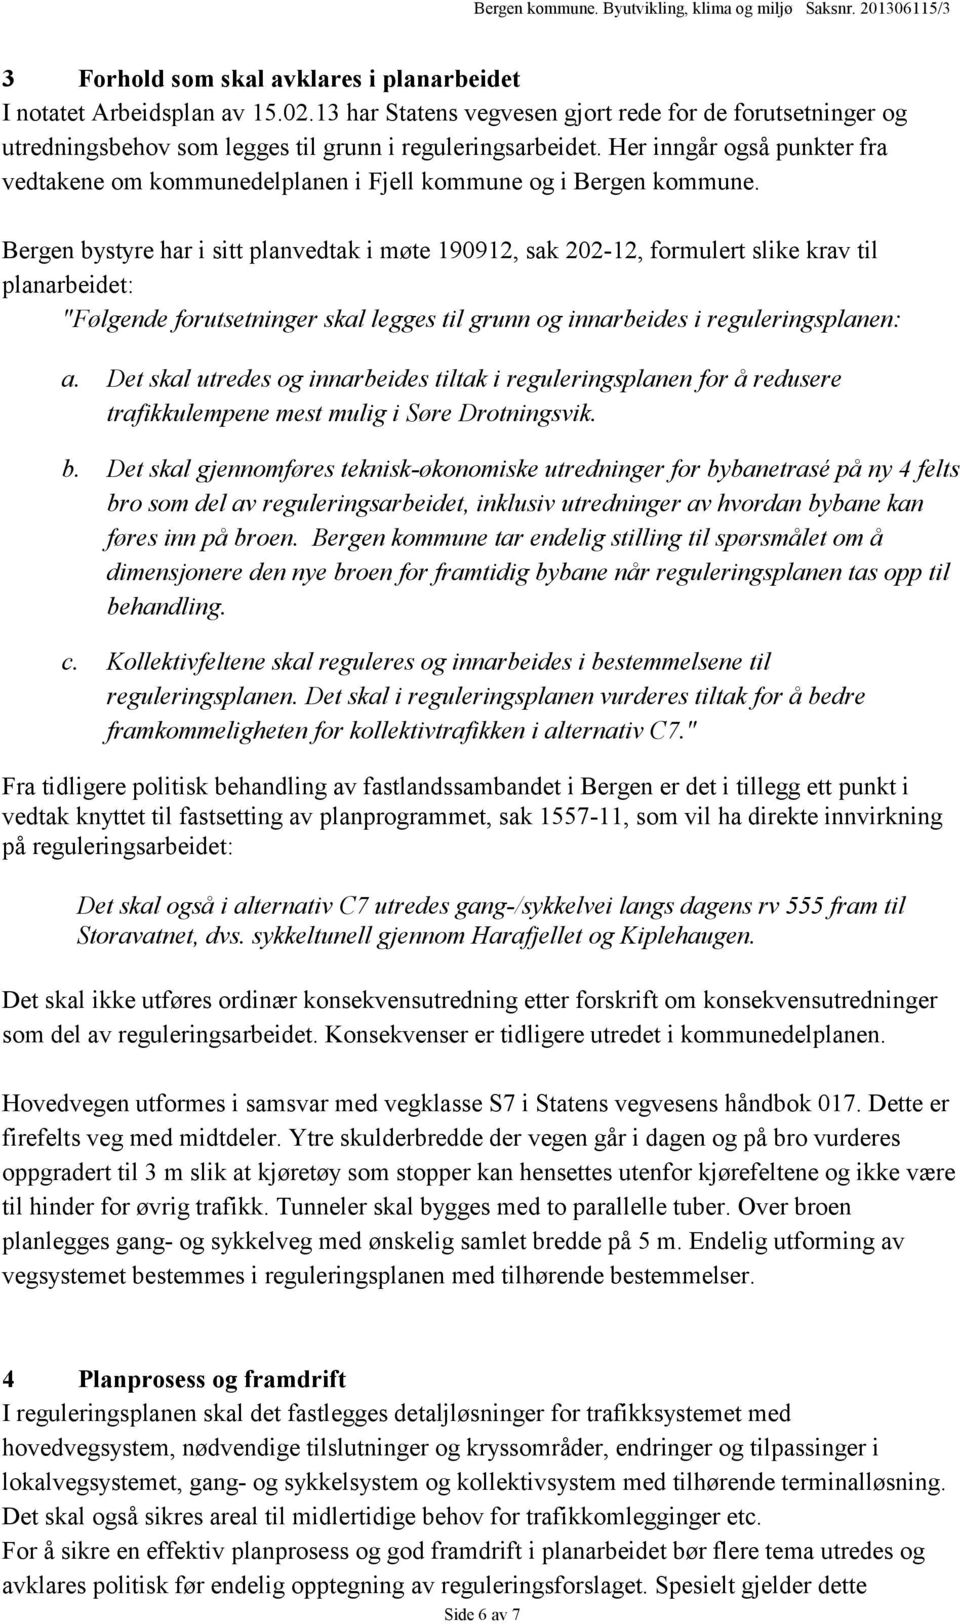 Bergen bystyre har i sitt planvedtak i møte 190912, sak 202-12, formulert slike krav til planarbeidet: "Følgende forutsetninger skal legges til grunn og innarbeides i reguleringsplanen: a.